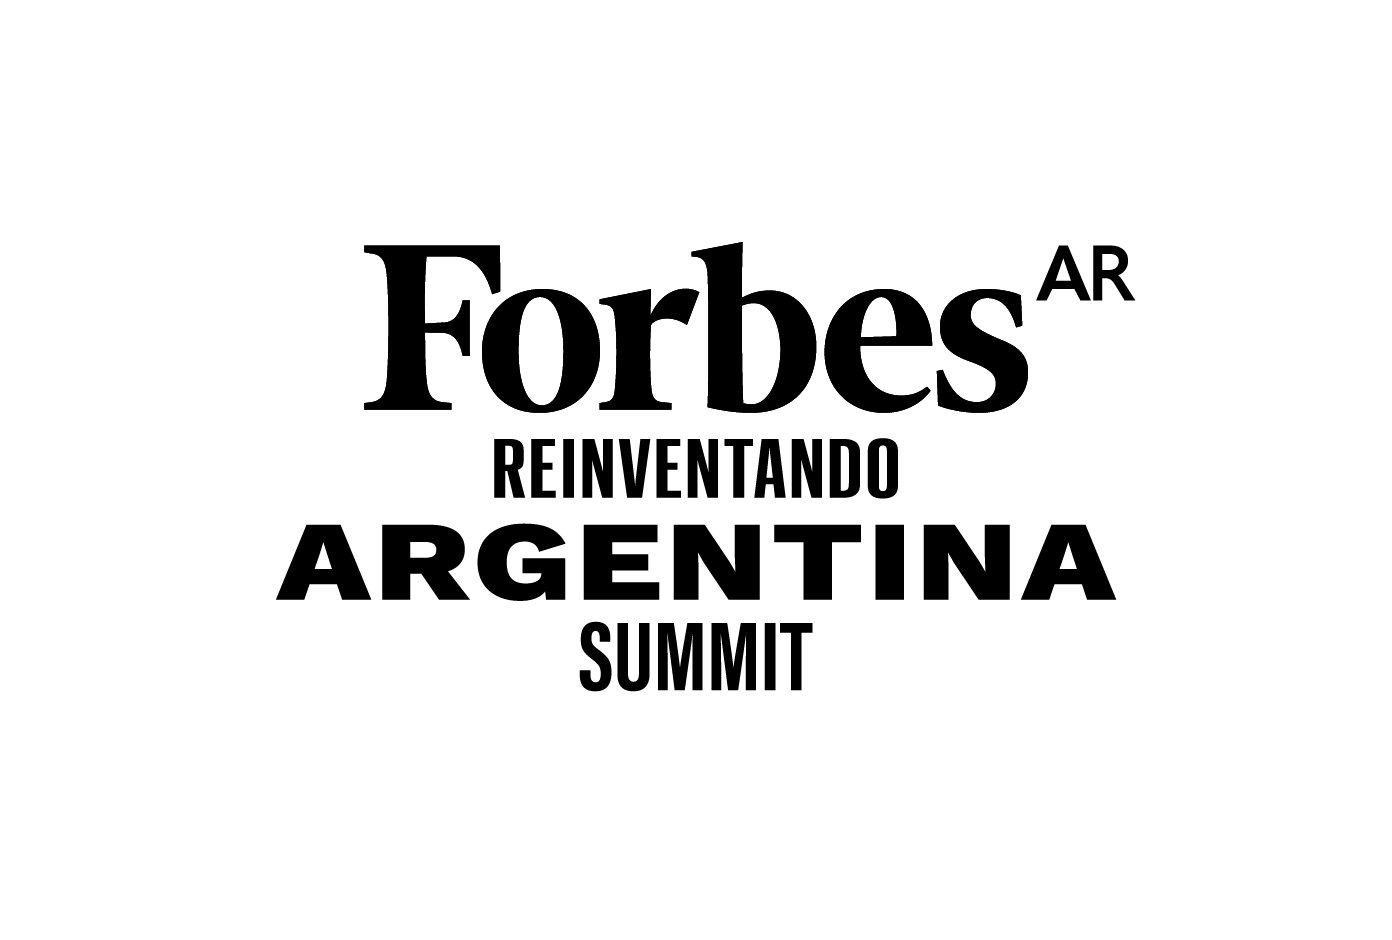 Reinventando Argentina